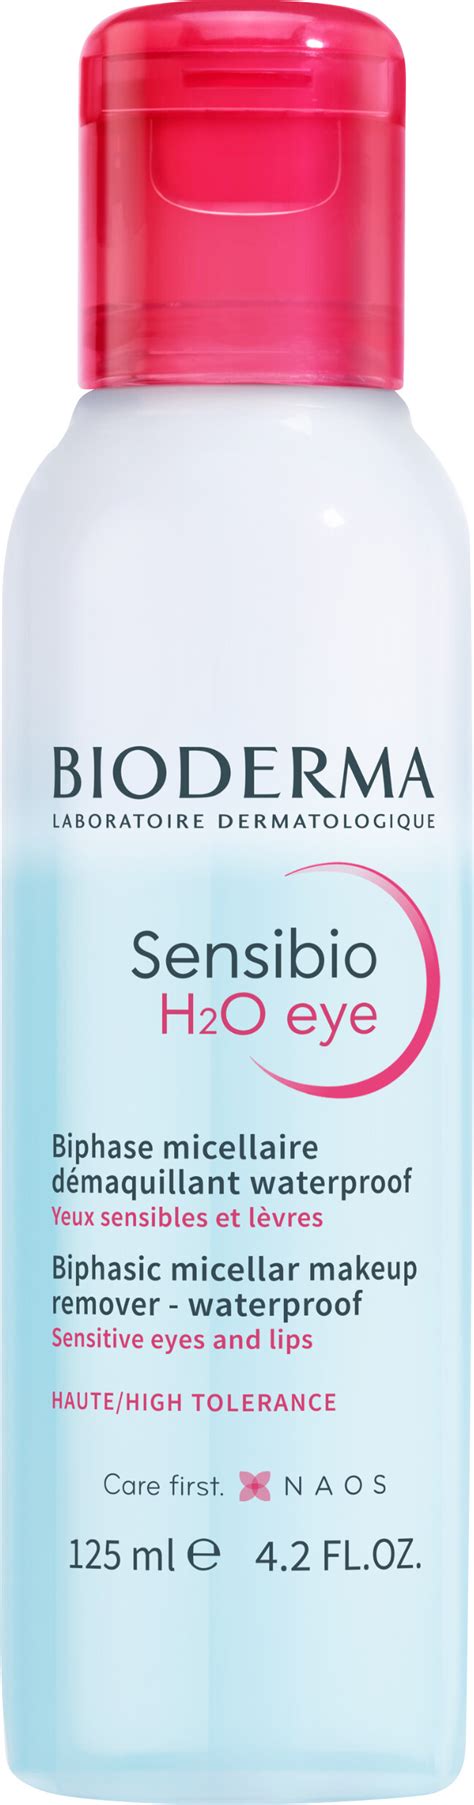 Bioderma Sensibio H2o Eye Biphase Micellar Makeup Remover